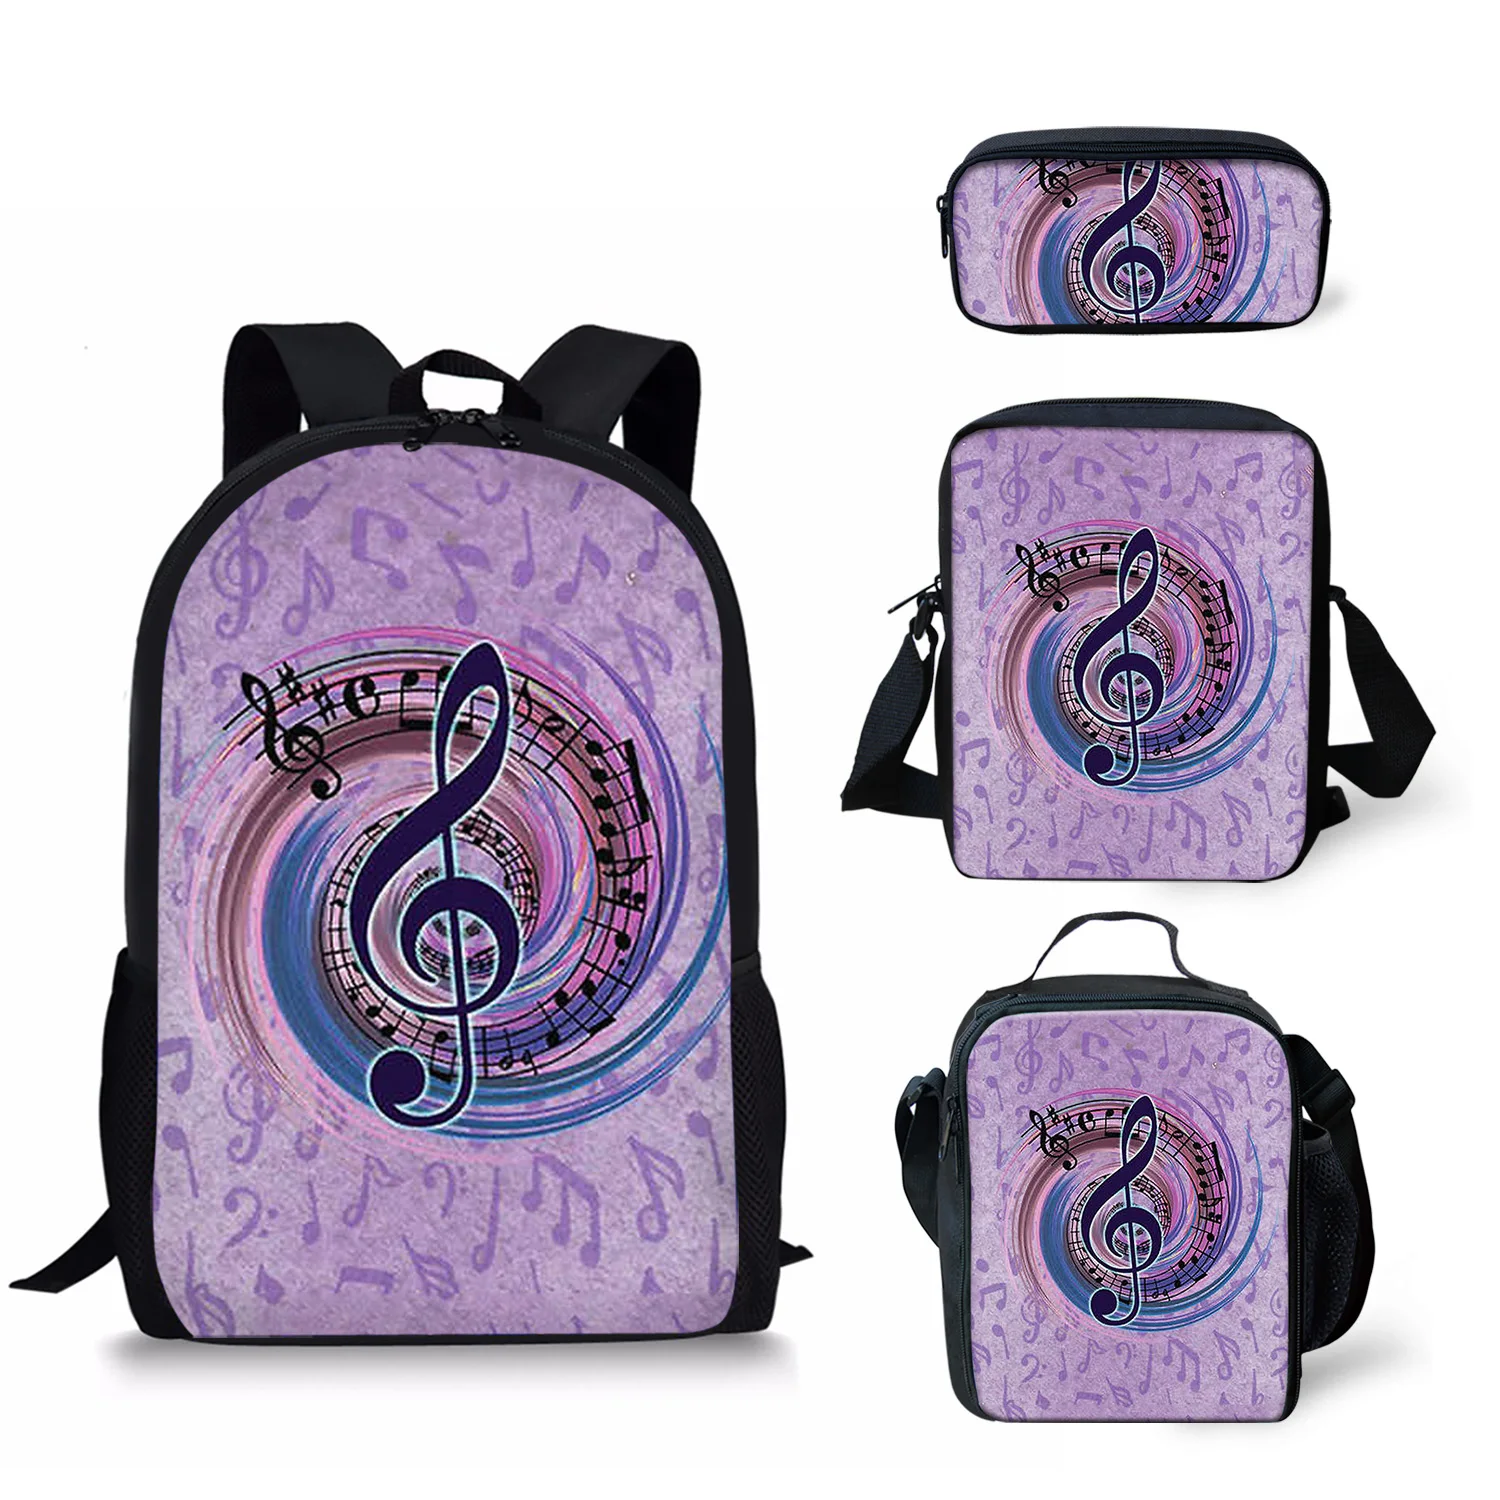 Школьные ранцы для девочек и студентов, рюкзак с принтом музыкальных нот, Разноцветные сумки для учебников, 4 шт./компл.